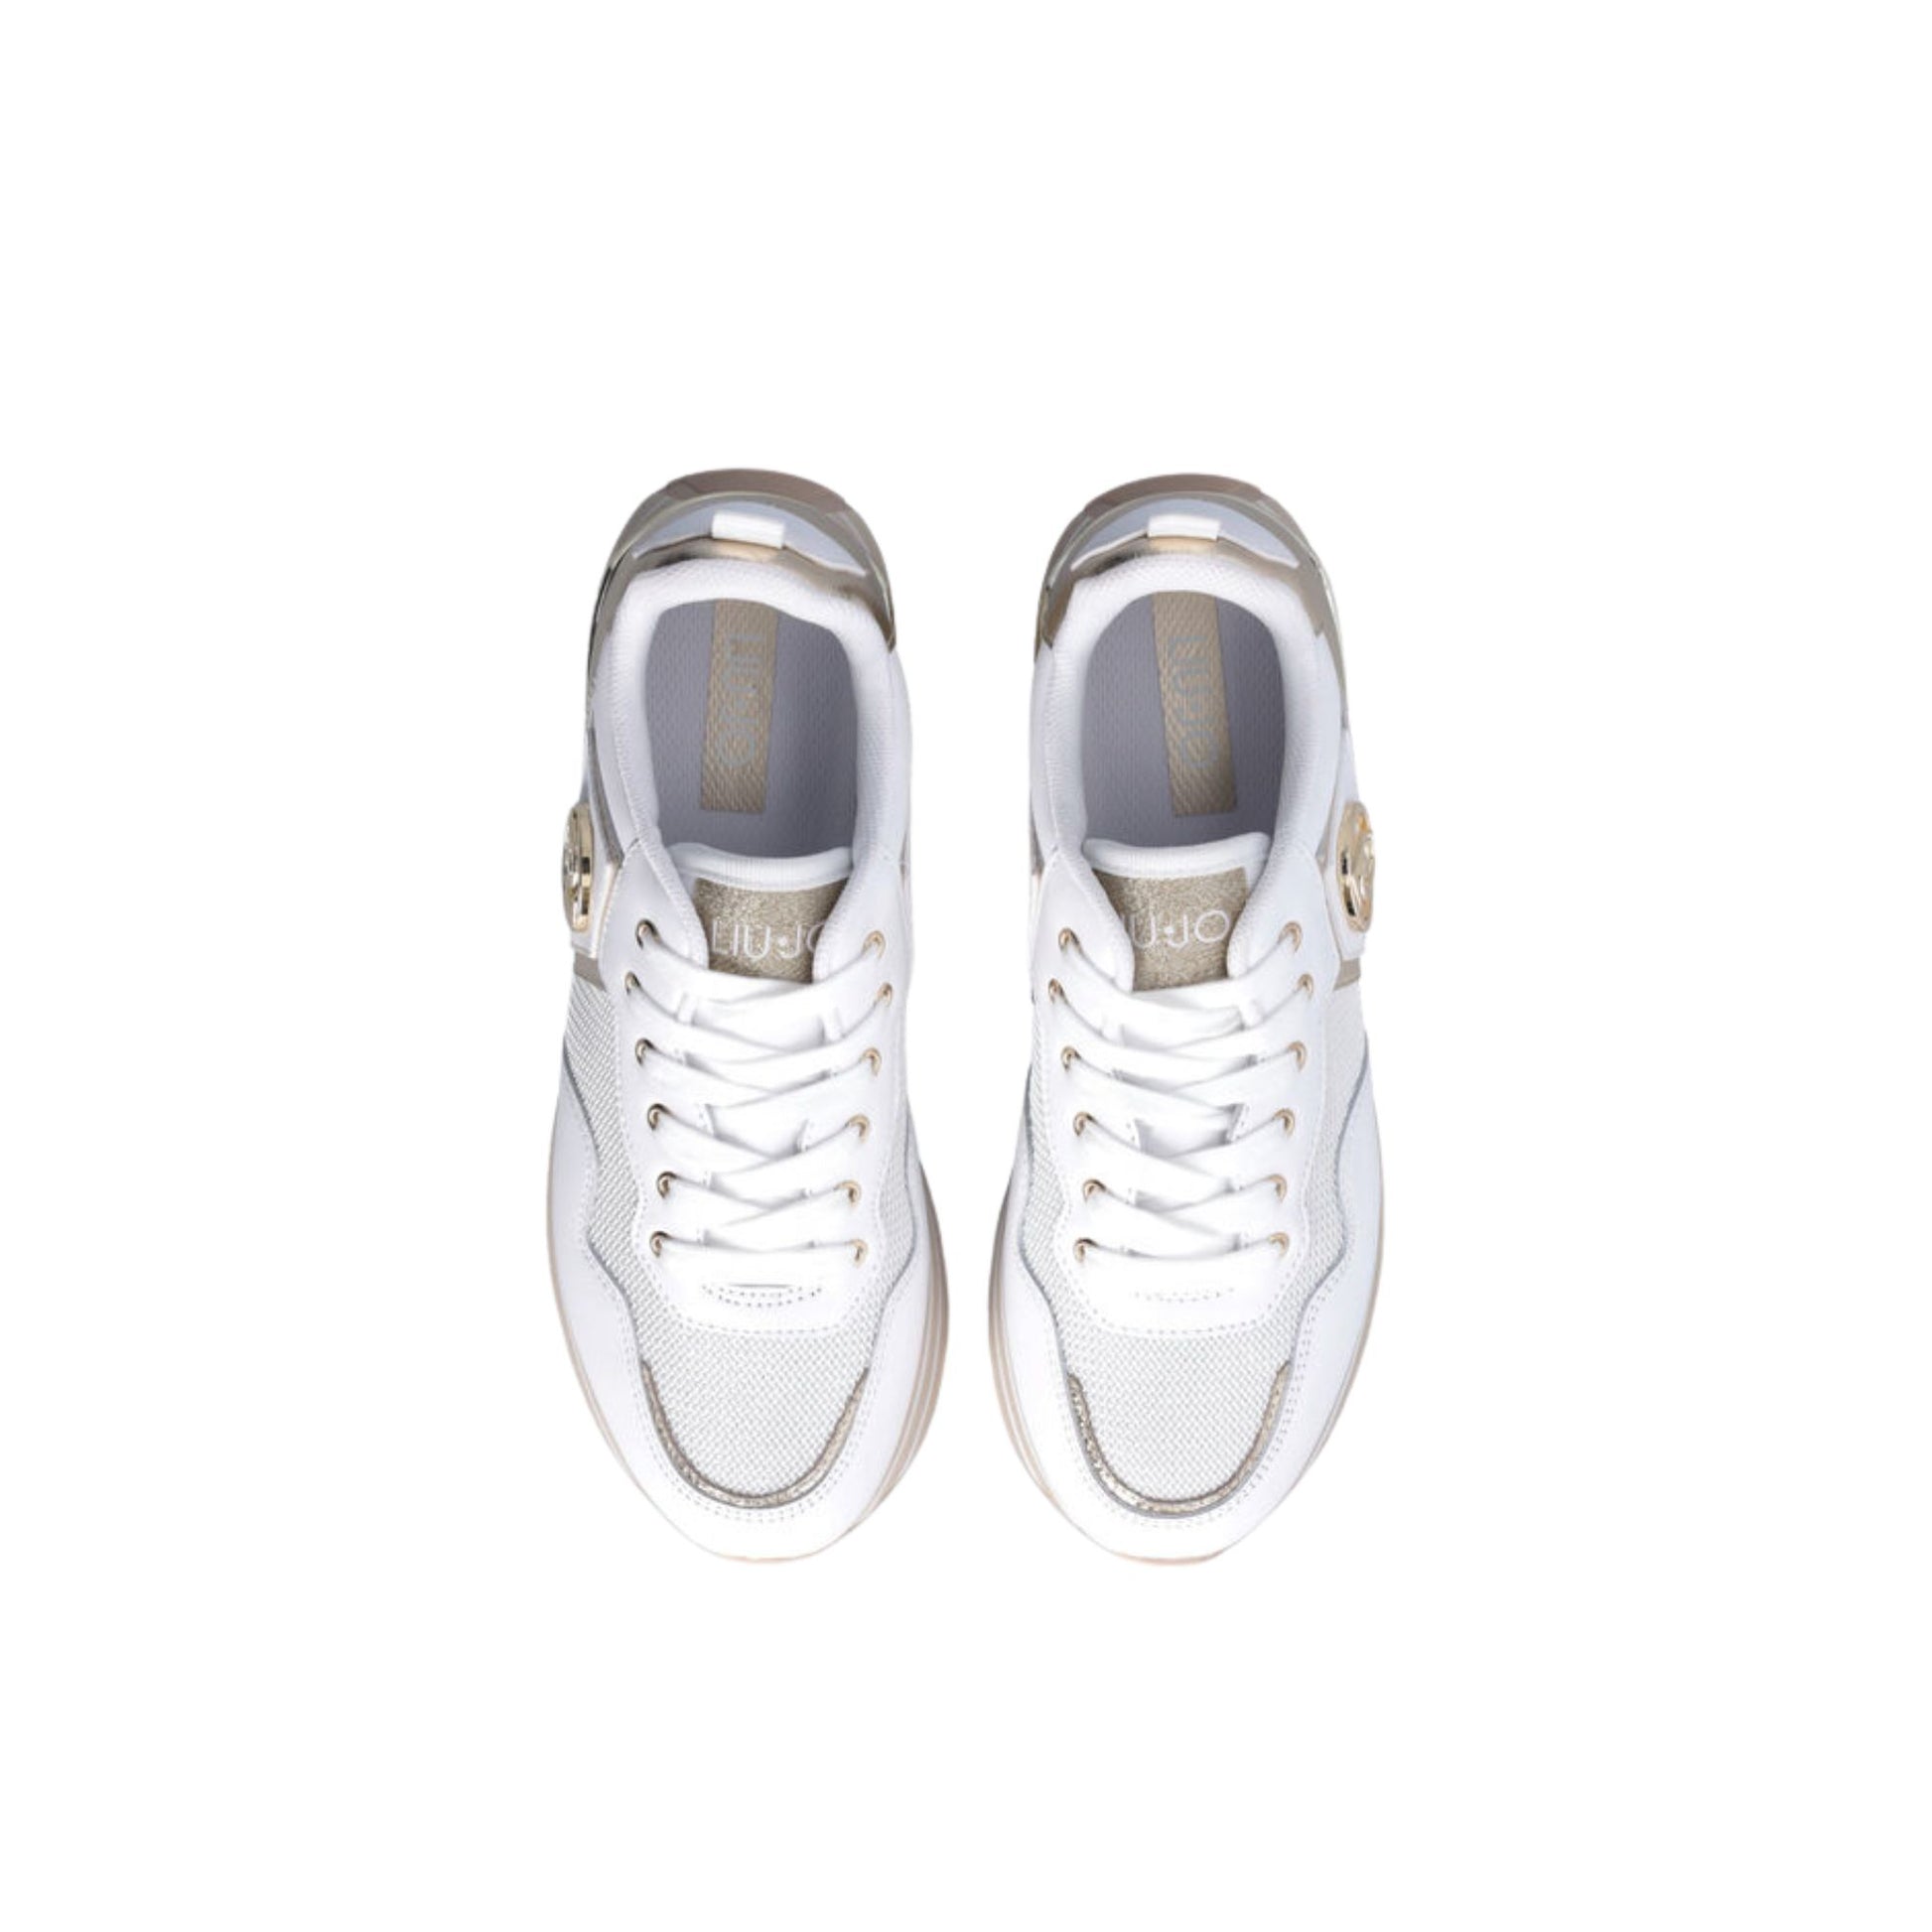 Immagine superiore Sneakers platform con inserti in pelle laminata e logo in metallo laterale